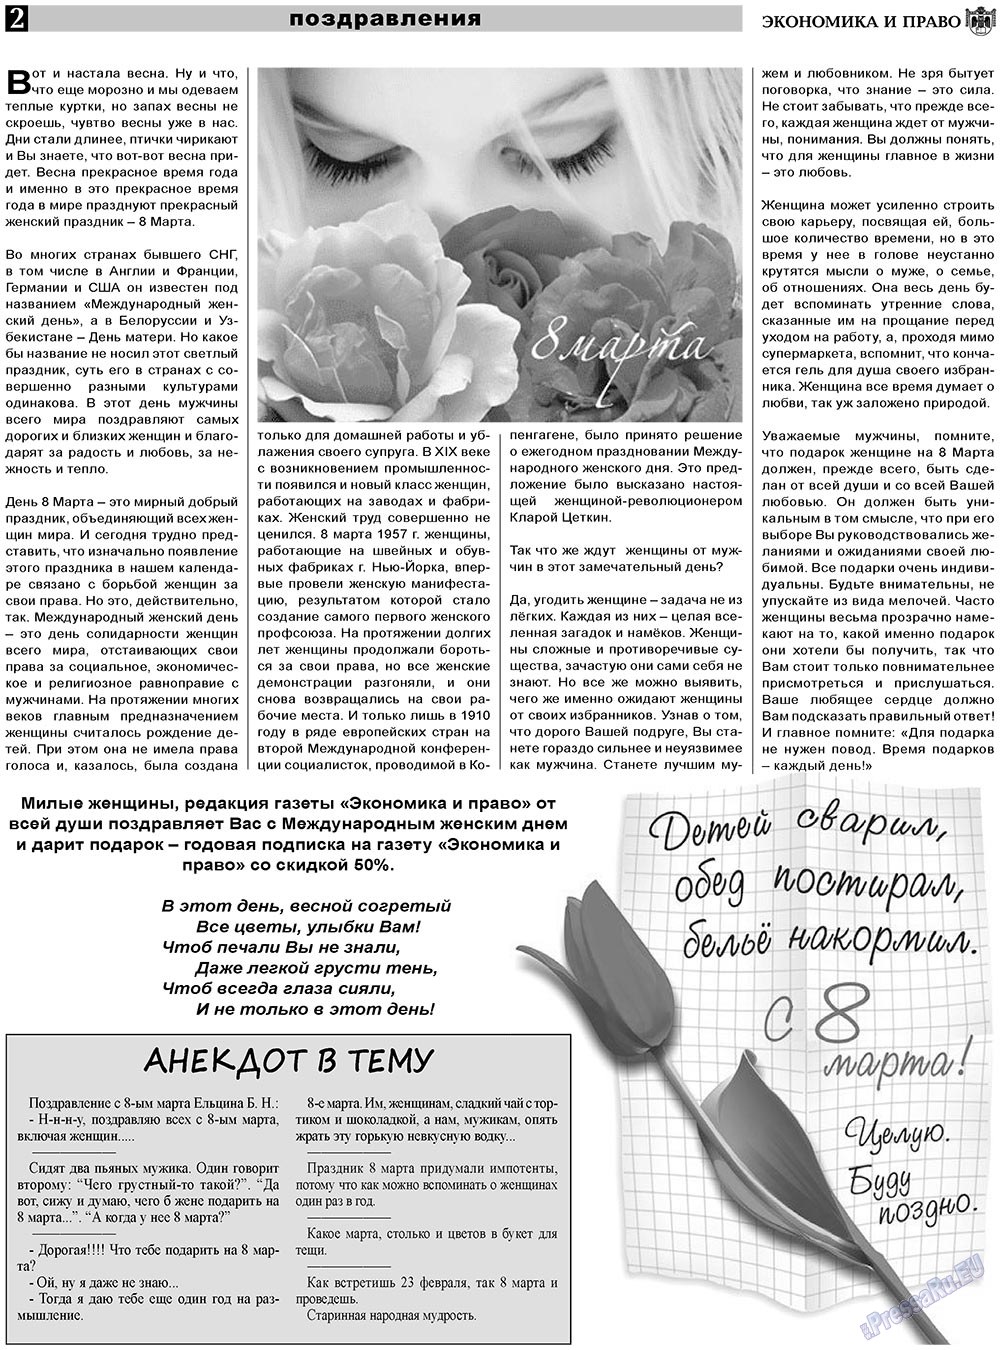 Экономика и право, газета. 2011 №3 стр.2